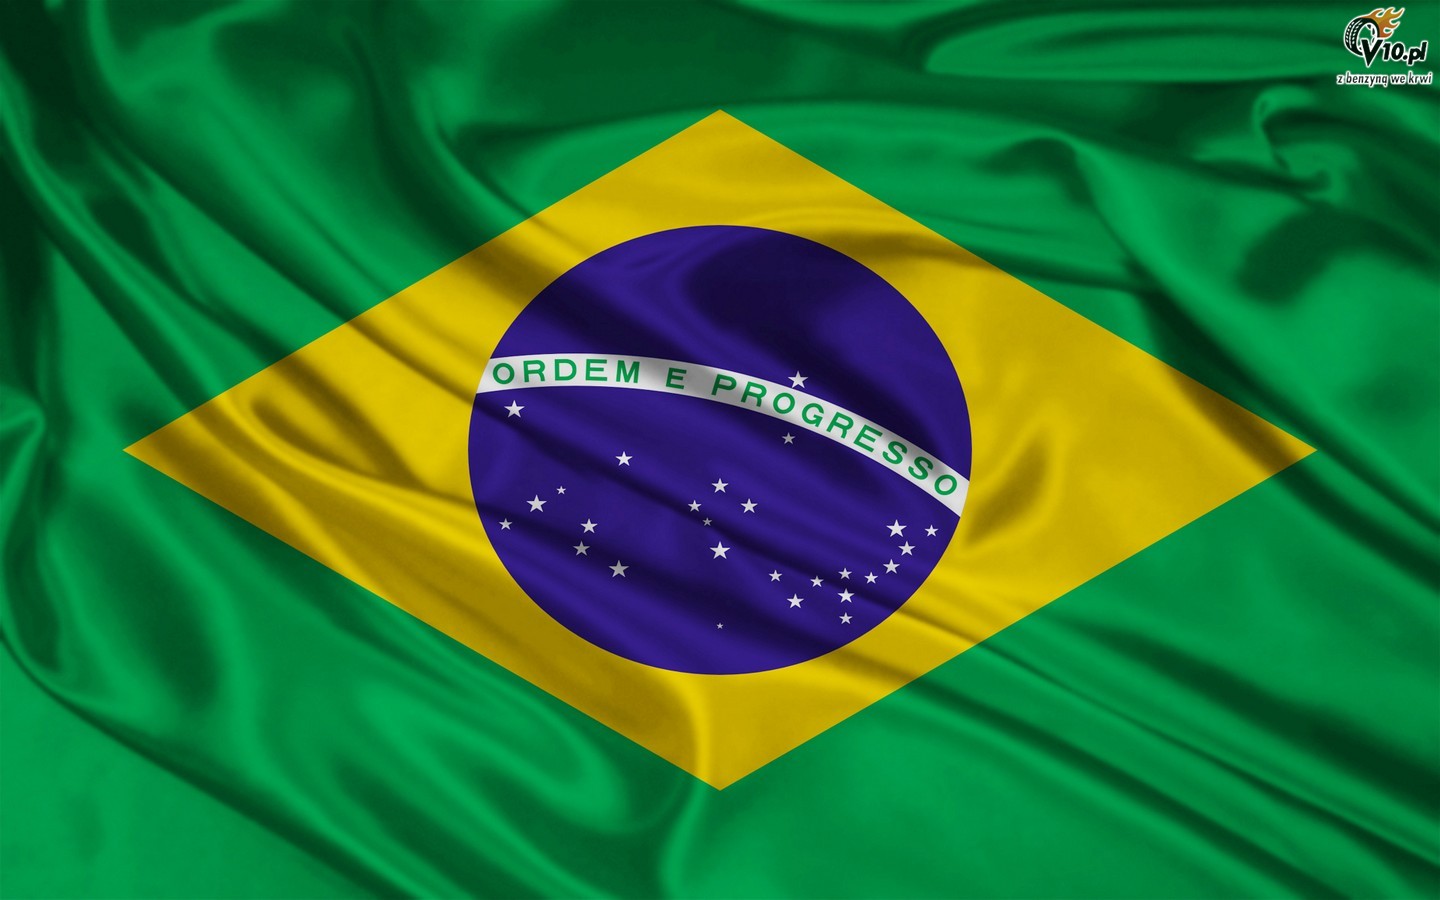 Brazylia debatuje o zakładach sportowych